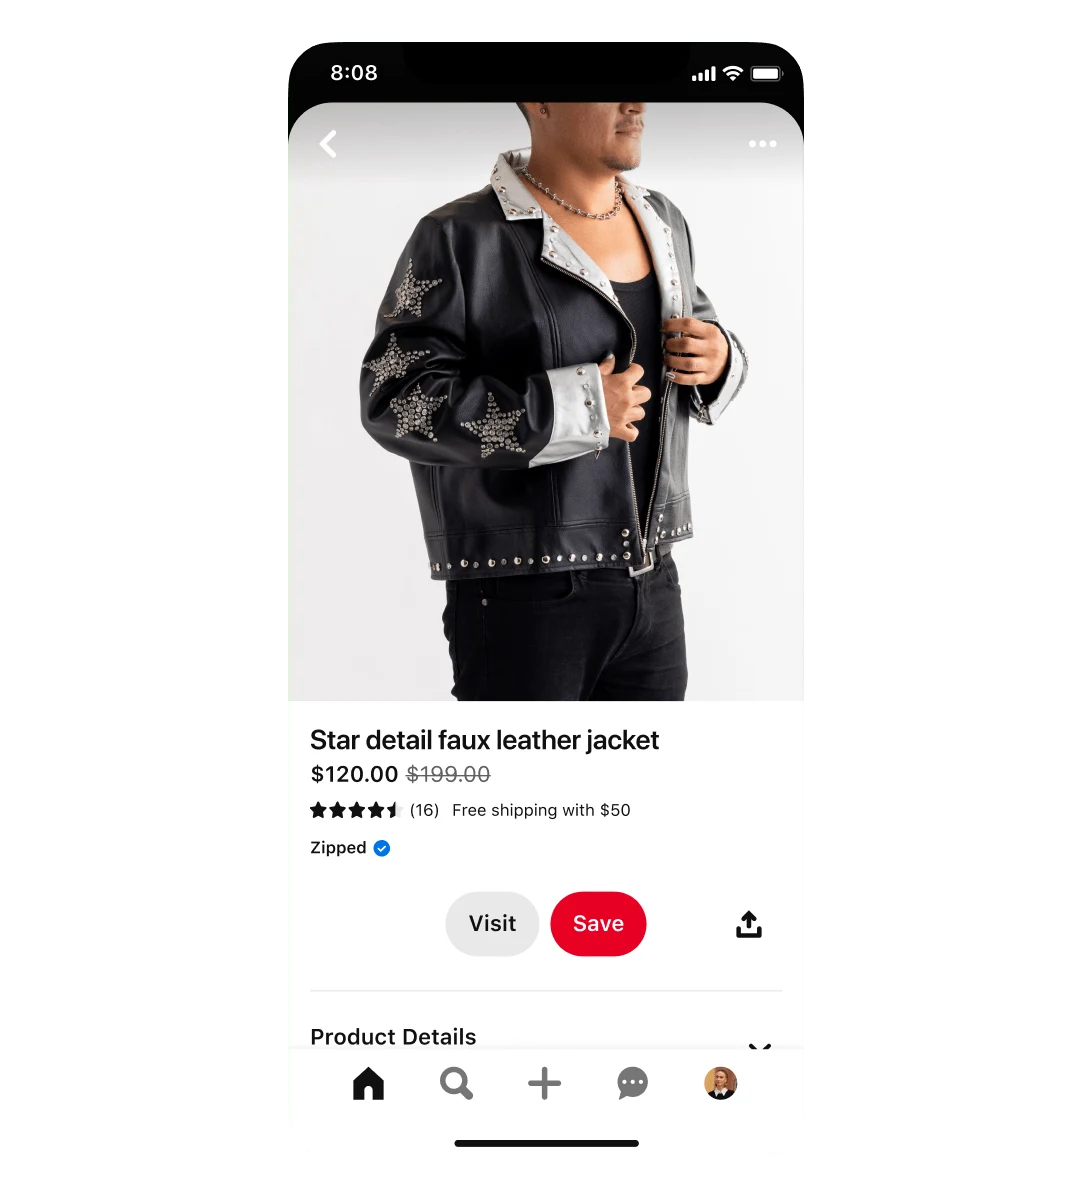 Yıldız detaylı sahte deri bir ceket için Alışveriş reklamının mobil görünümü. Ceket 120 $'a indirimde, 199 $'dan indirilmiş. Reklamda, ceket giyen bir adam yer alıyor.